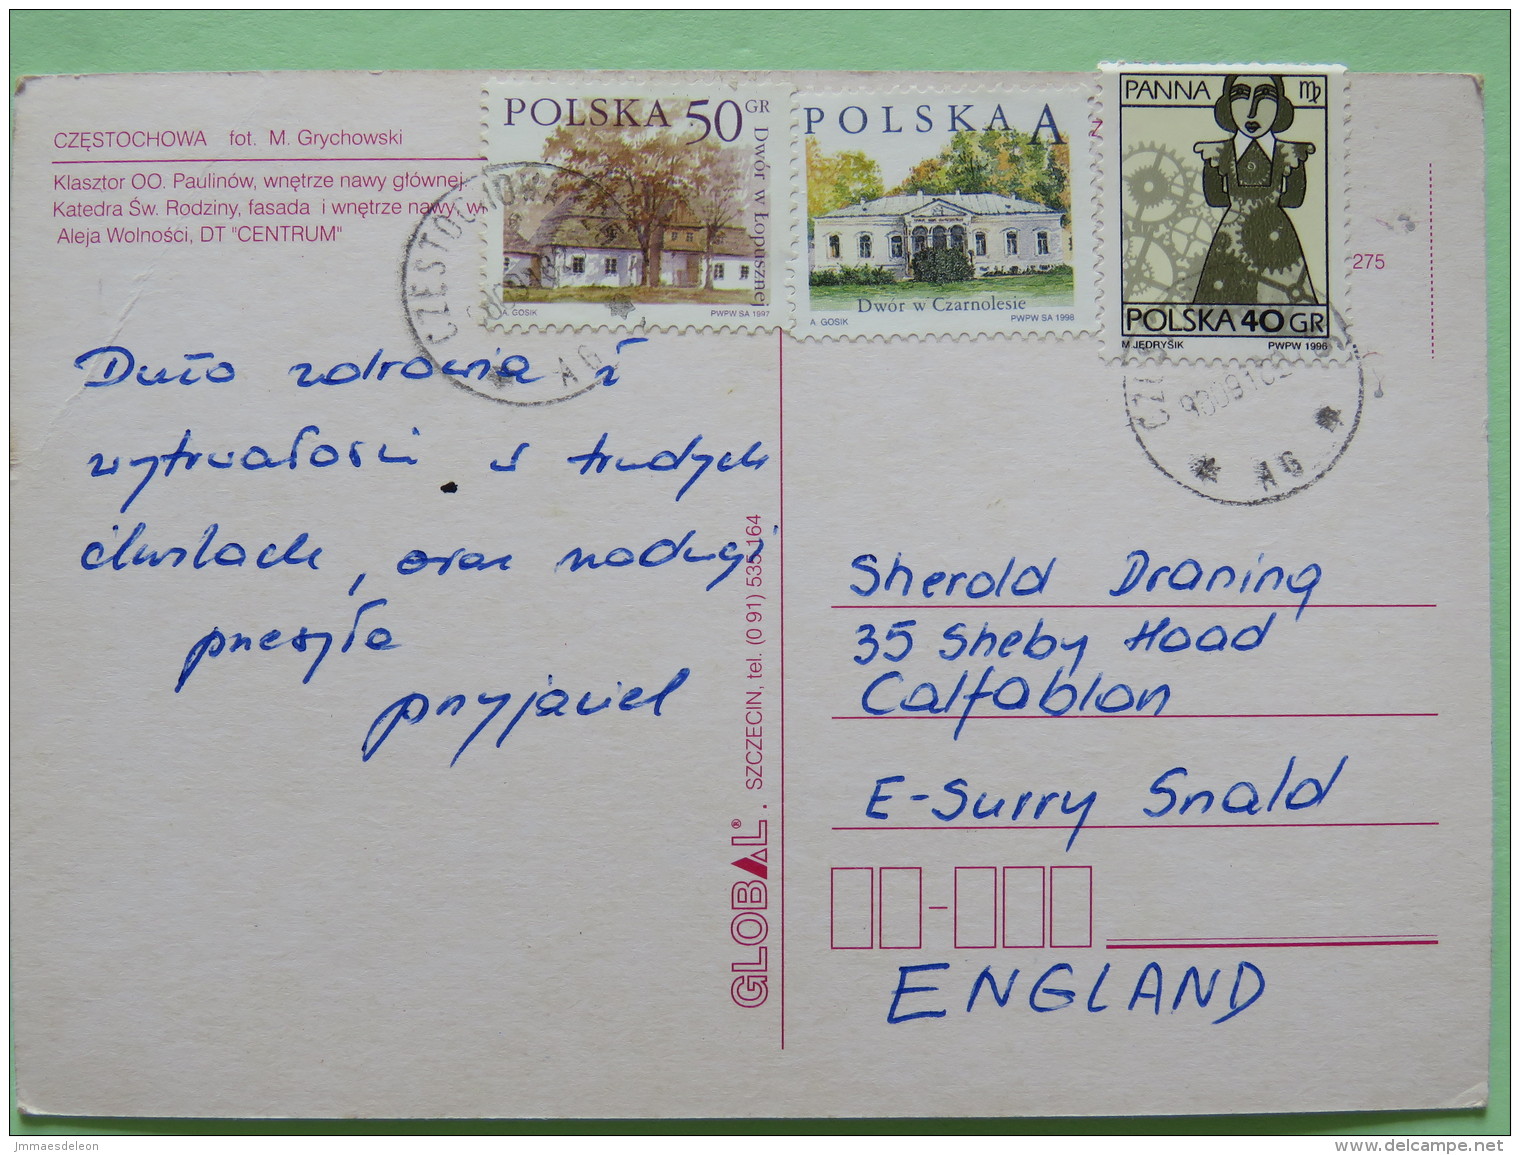 Poland 1999 Postcard ""Czestochowa Cathedral Mac Donald"" To England - Zodiac Virgo - Country Estates Lopusznej And Czar - Poland